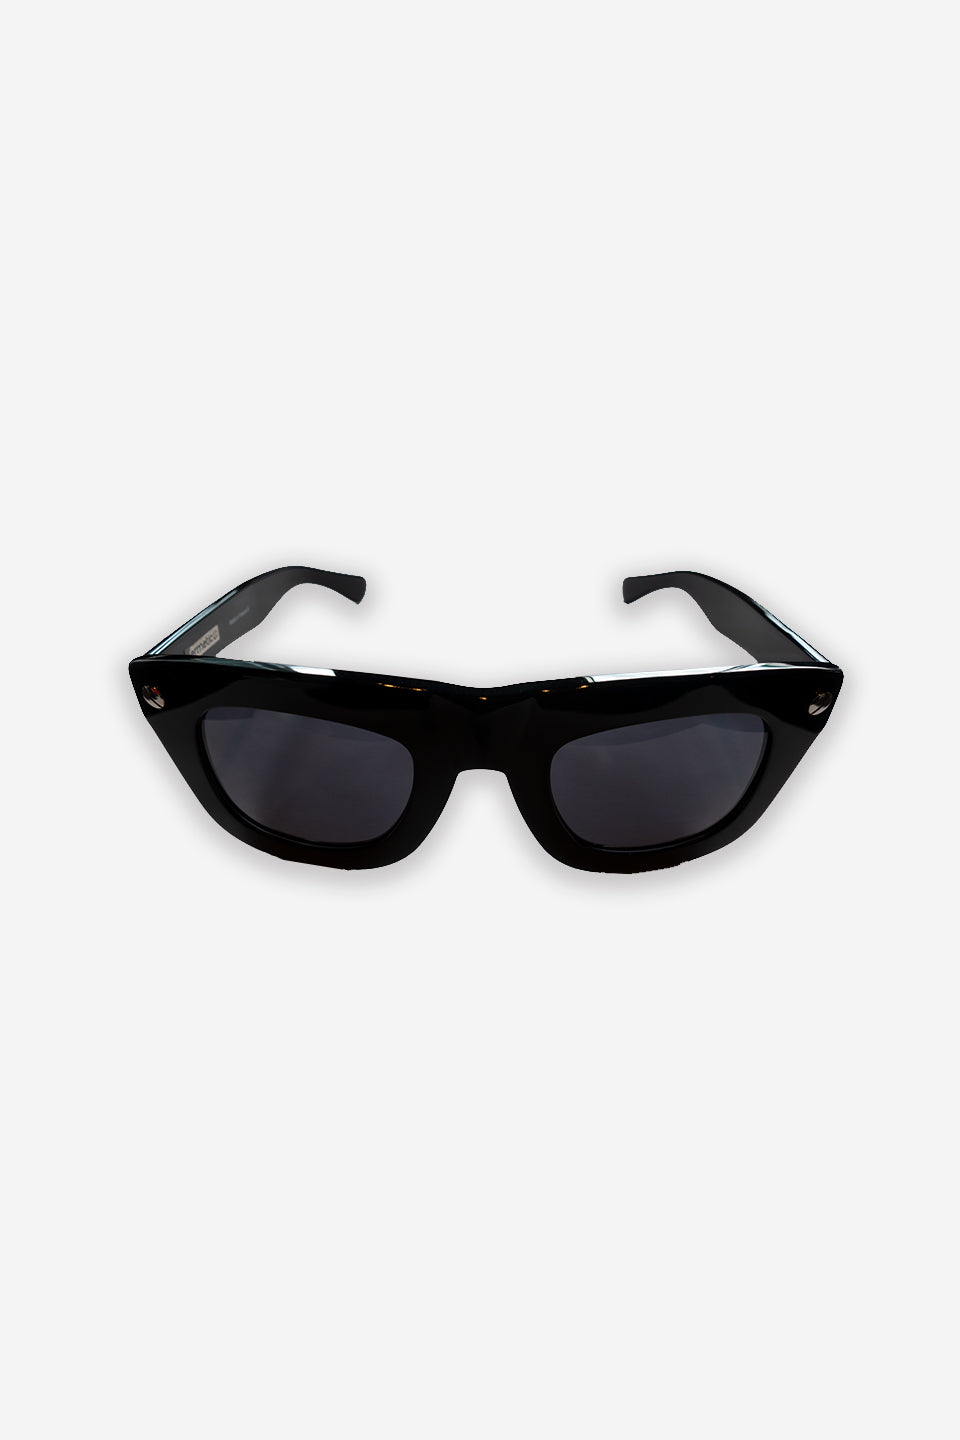 Original Sunglasses (Black Lens)